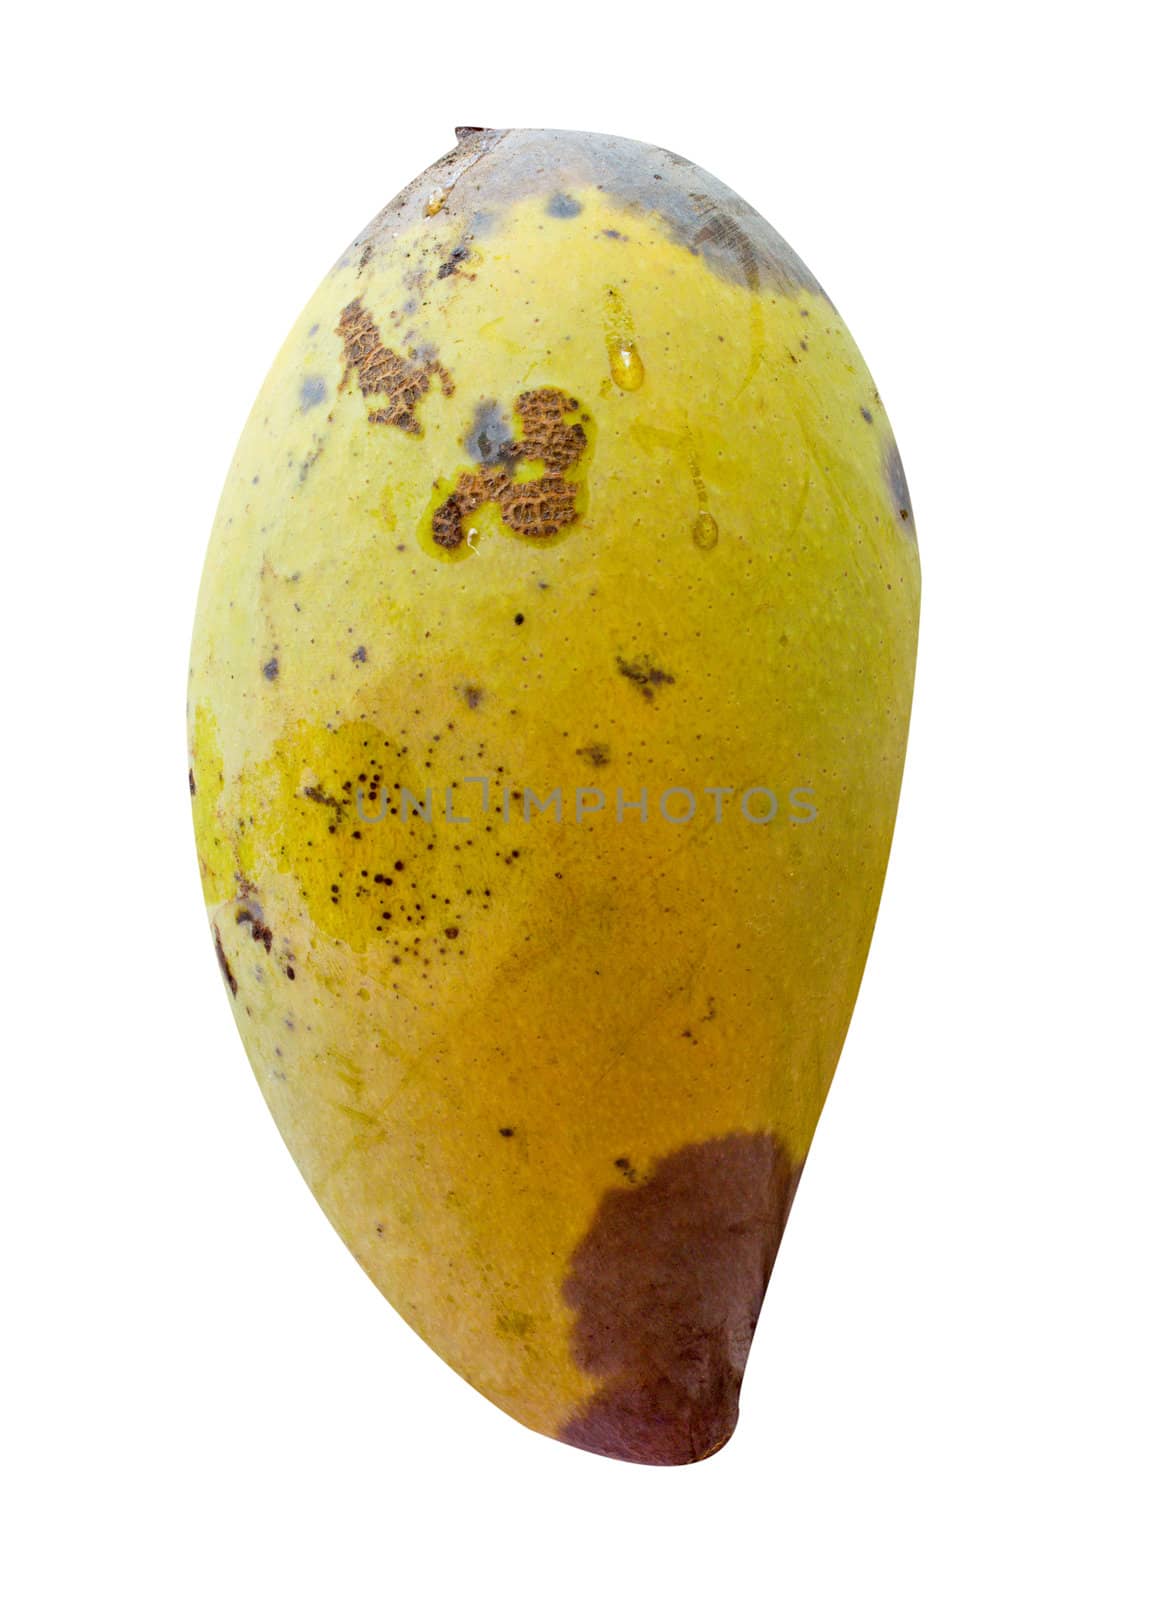 a rot mango fruit on white background